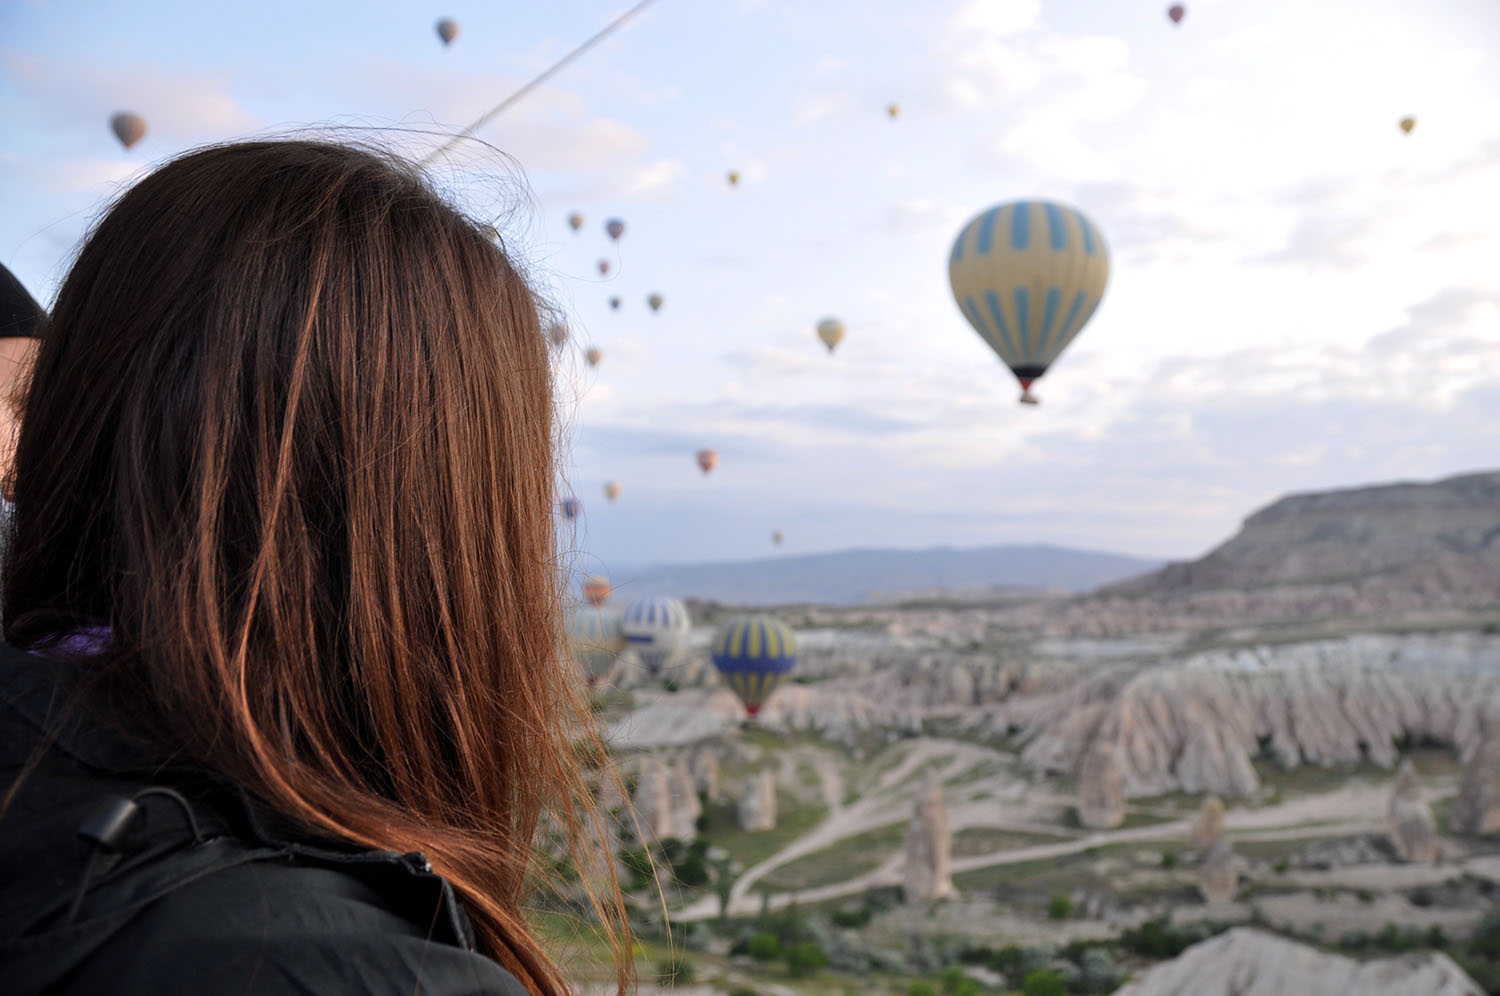 乘坐热气球在土耳其卡帕多西亚与土耳其气球